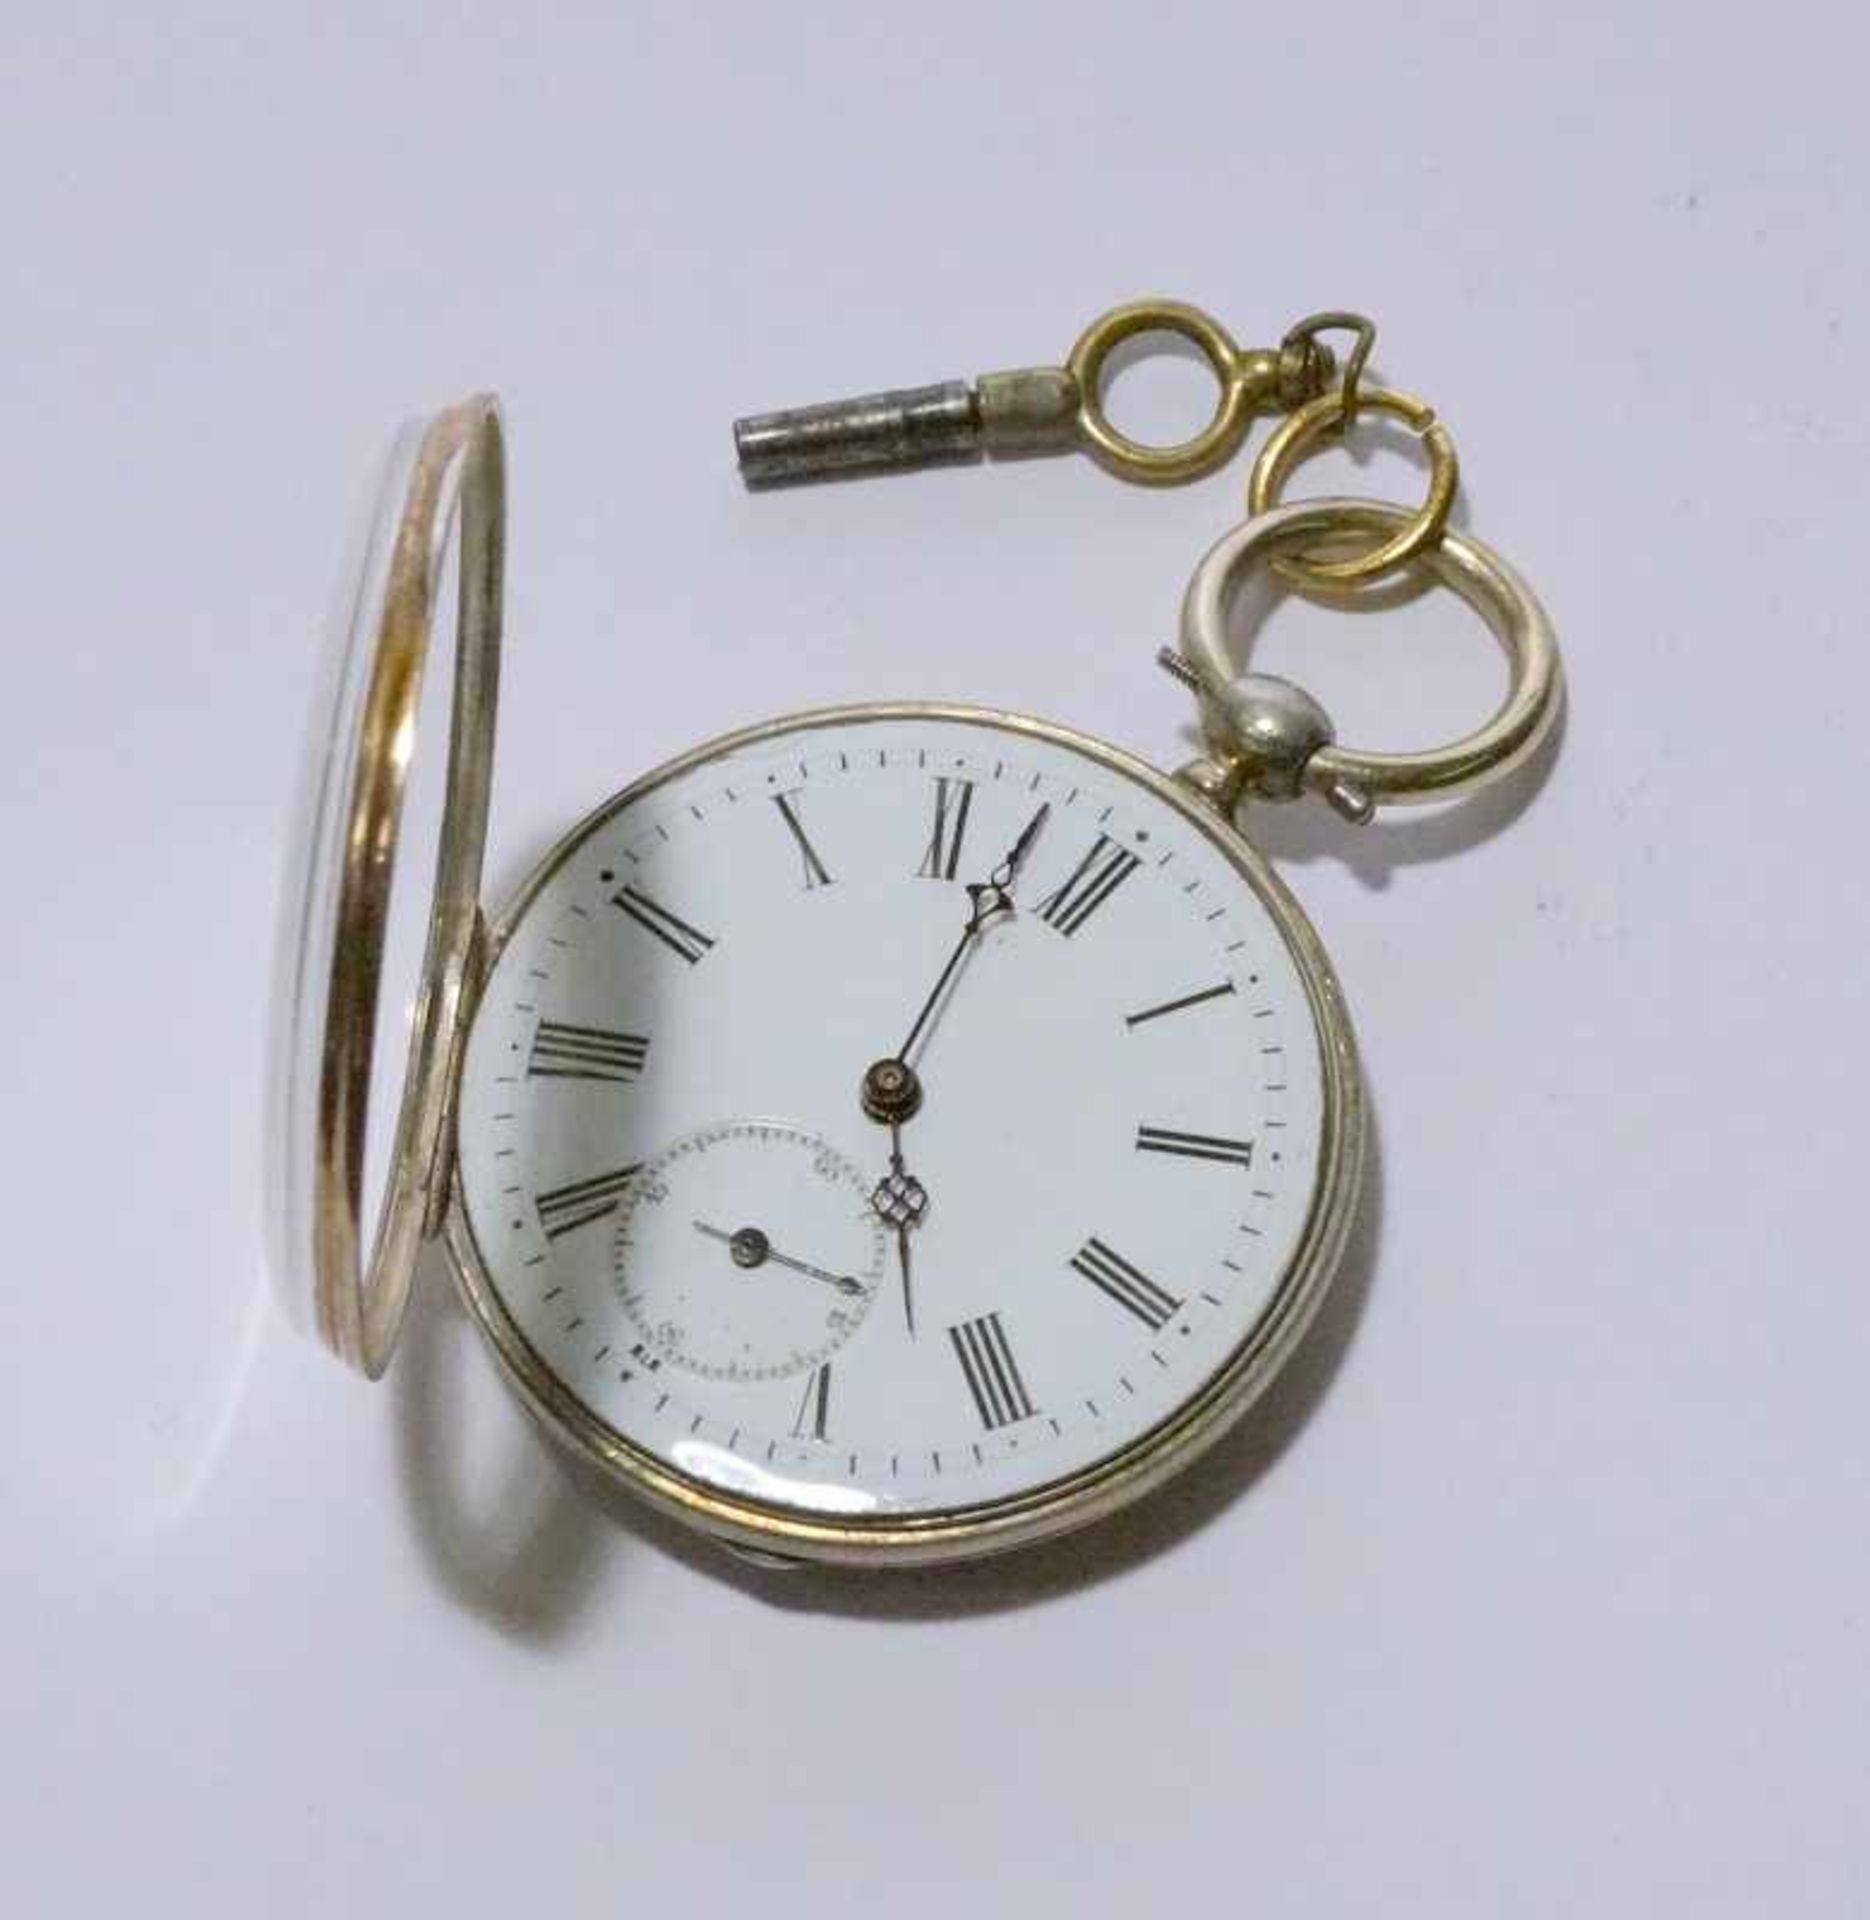 2 Taschenuhren m. Schlüsselaufzug, 925 Silber, vor 1880gut erh. Emaillezifferbaltt mit röm. Ziffern,